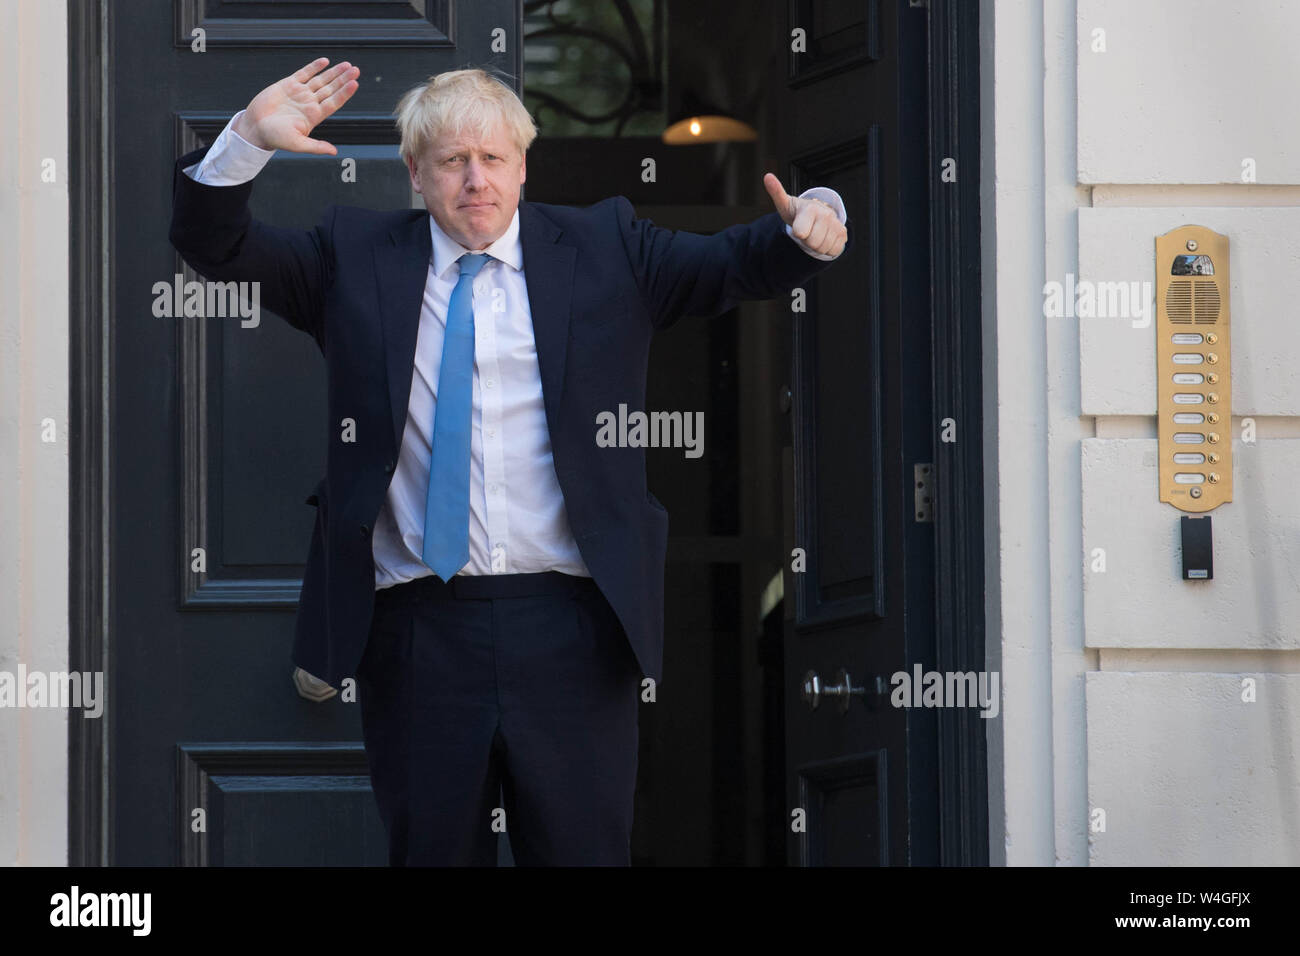 Neu Führer der Konservativen Partei Boris Johnson bei Konservativen Partei HQ in Westminster, London eintrifft gewählt, nachdem es bekannt war, dass er die Wahl gewonnen hatte, die Führung und die nächste Prime Minister geworden. Stockfoto